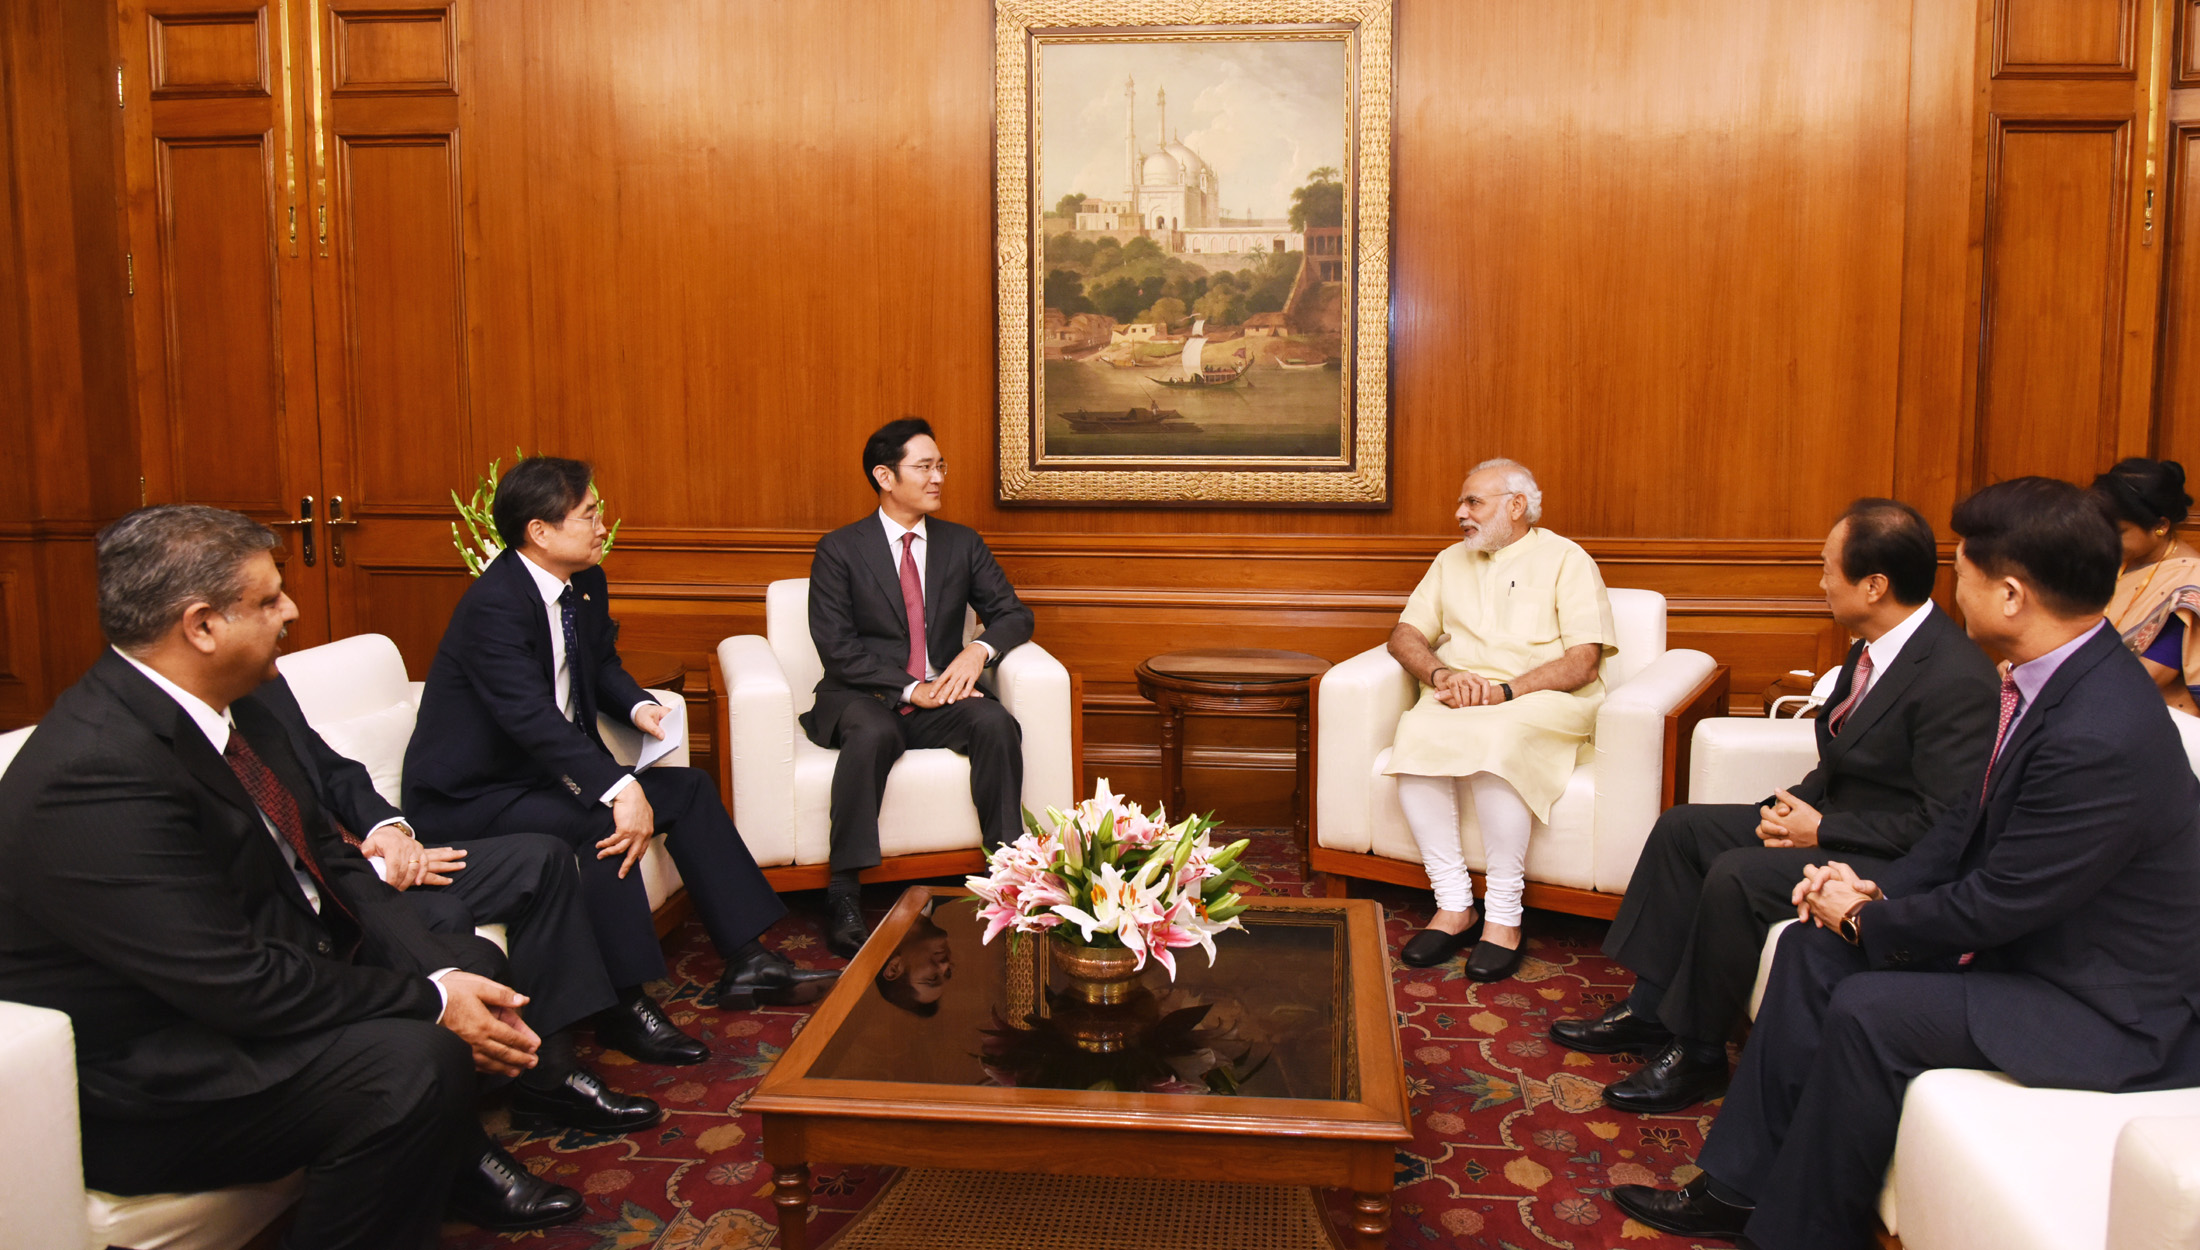 El vicepresidente de Samsung Electronics, Sr. Jay Y. Lee, visita al primer ministro, Shri Narendra Modi, en Nueva Delhi el 15 de septiembre de 2016